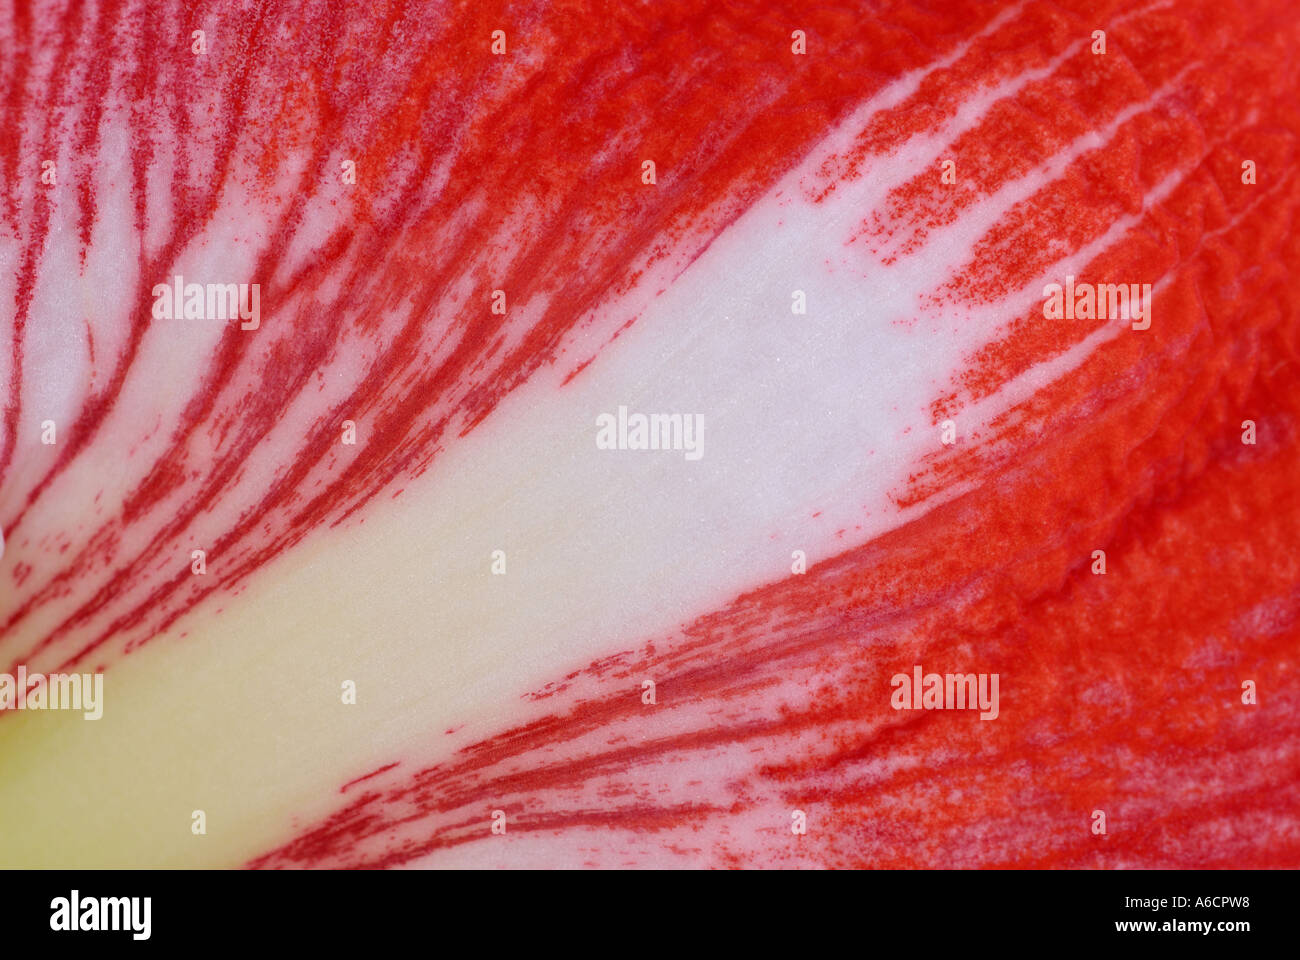 Auszug aus einem roten Amaryllis Blume Blütenblatt hautnah Stockfoto